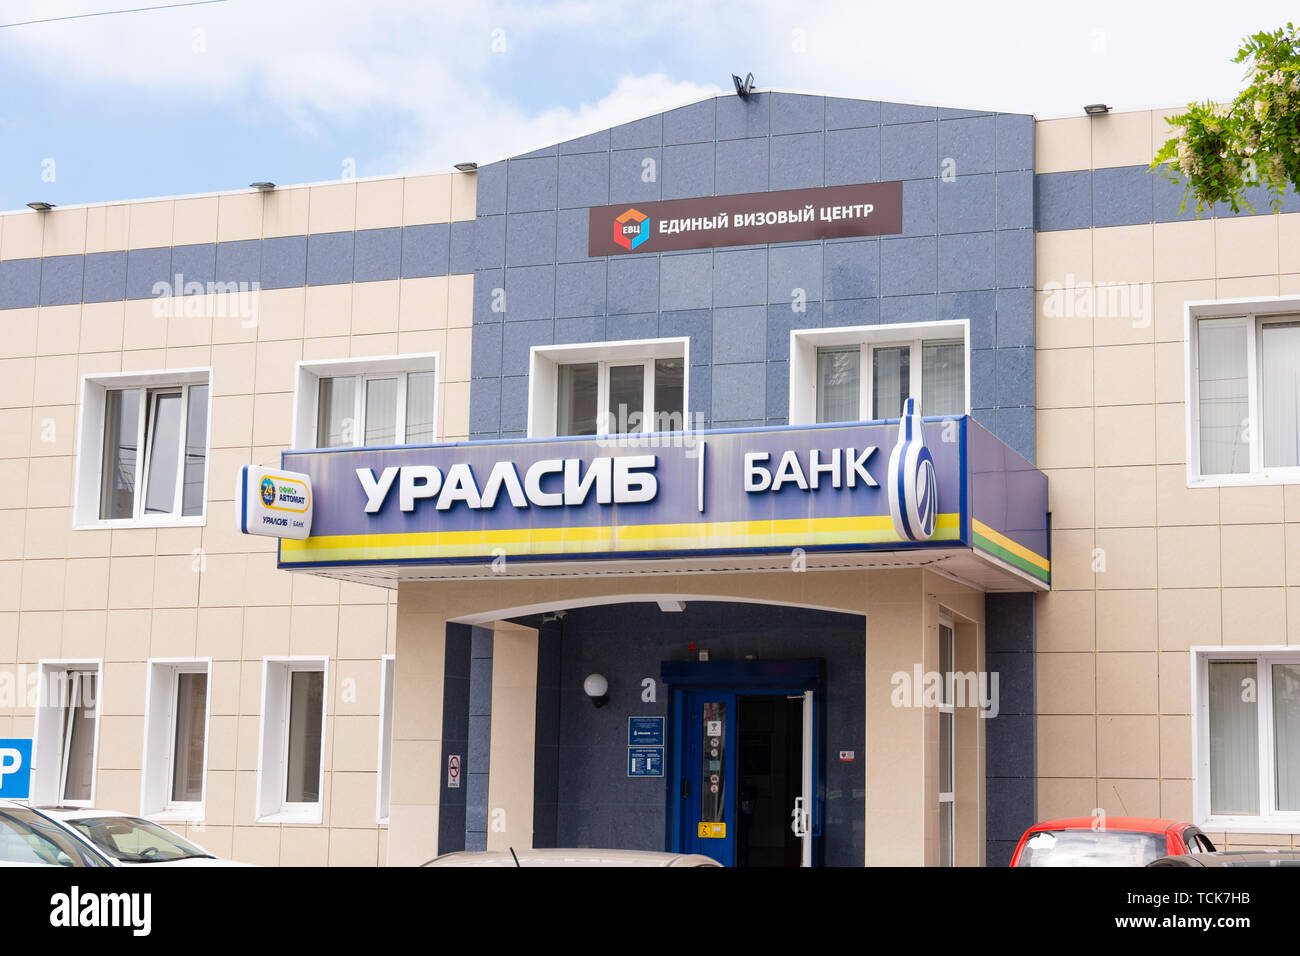 Sochi, Russland - 13. Mai 2019: Schild "Uralsib Bank' und 'Single Visa Application Centre" an der Fassade eines 2-stöckiges Gebäude. Stockfoto